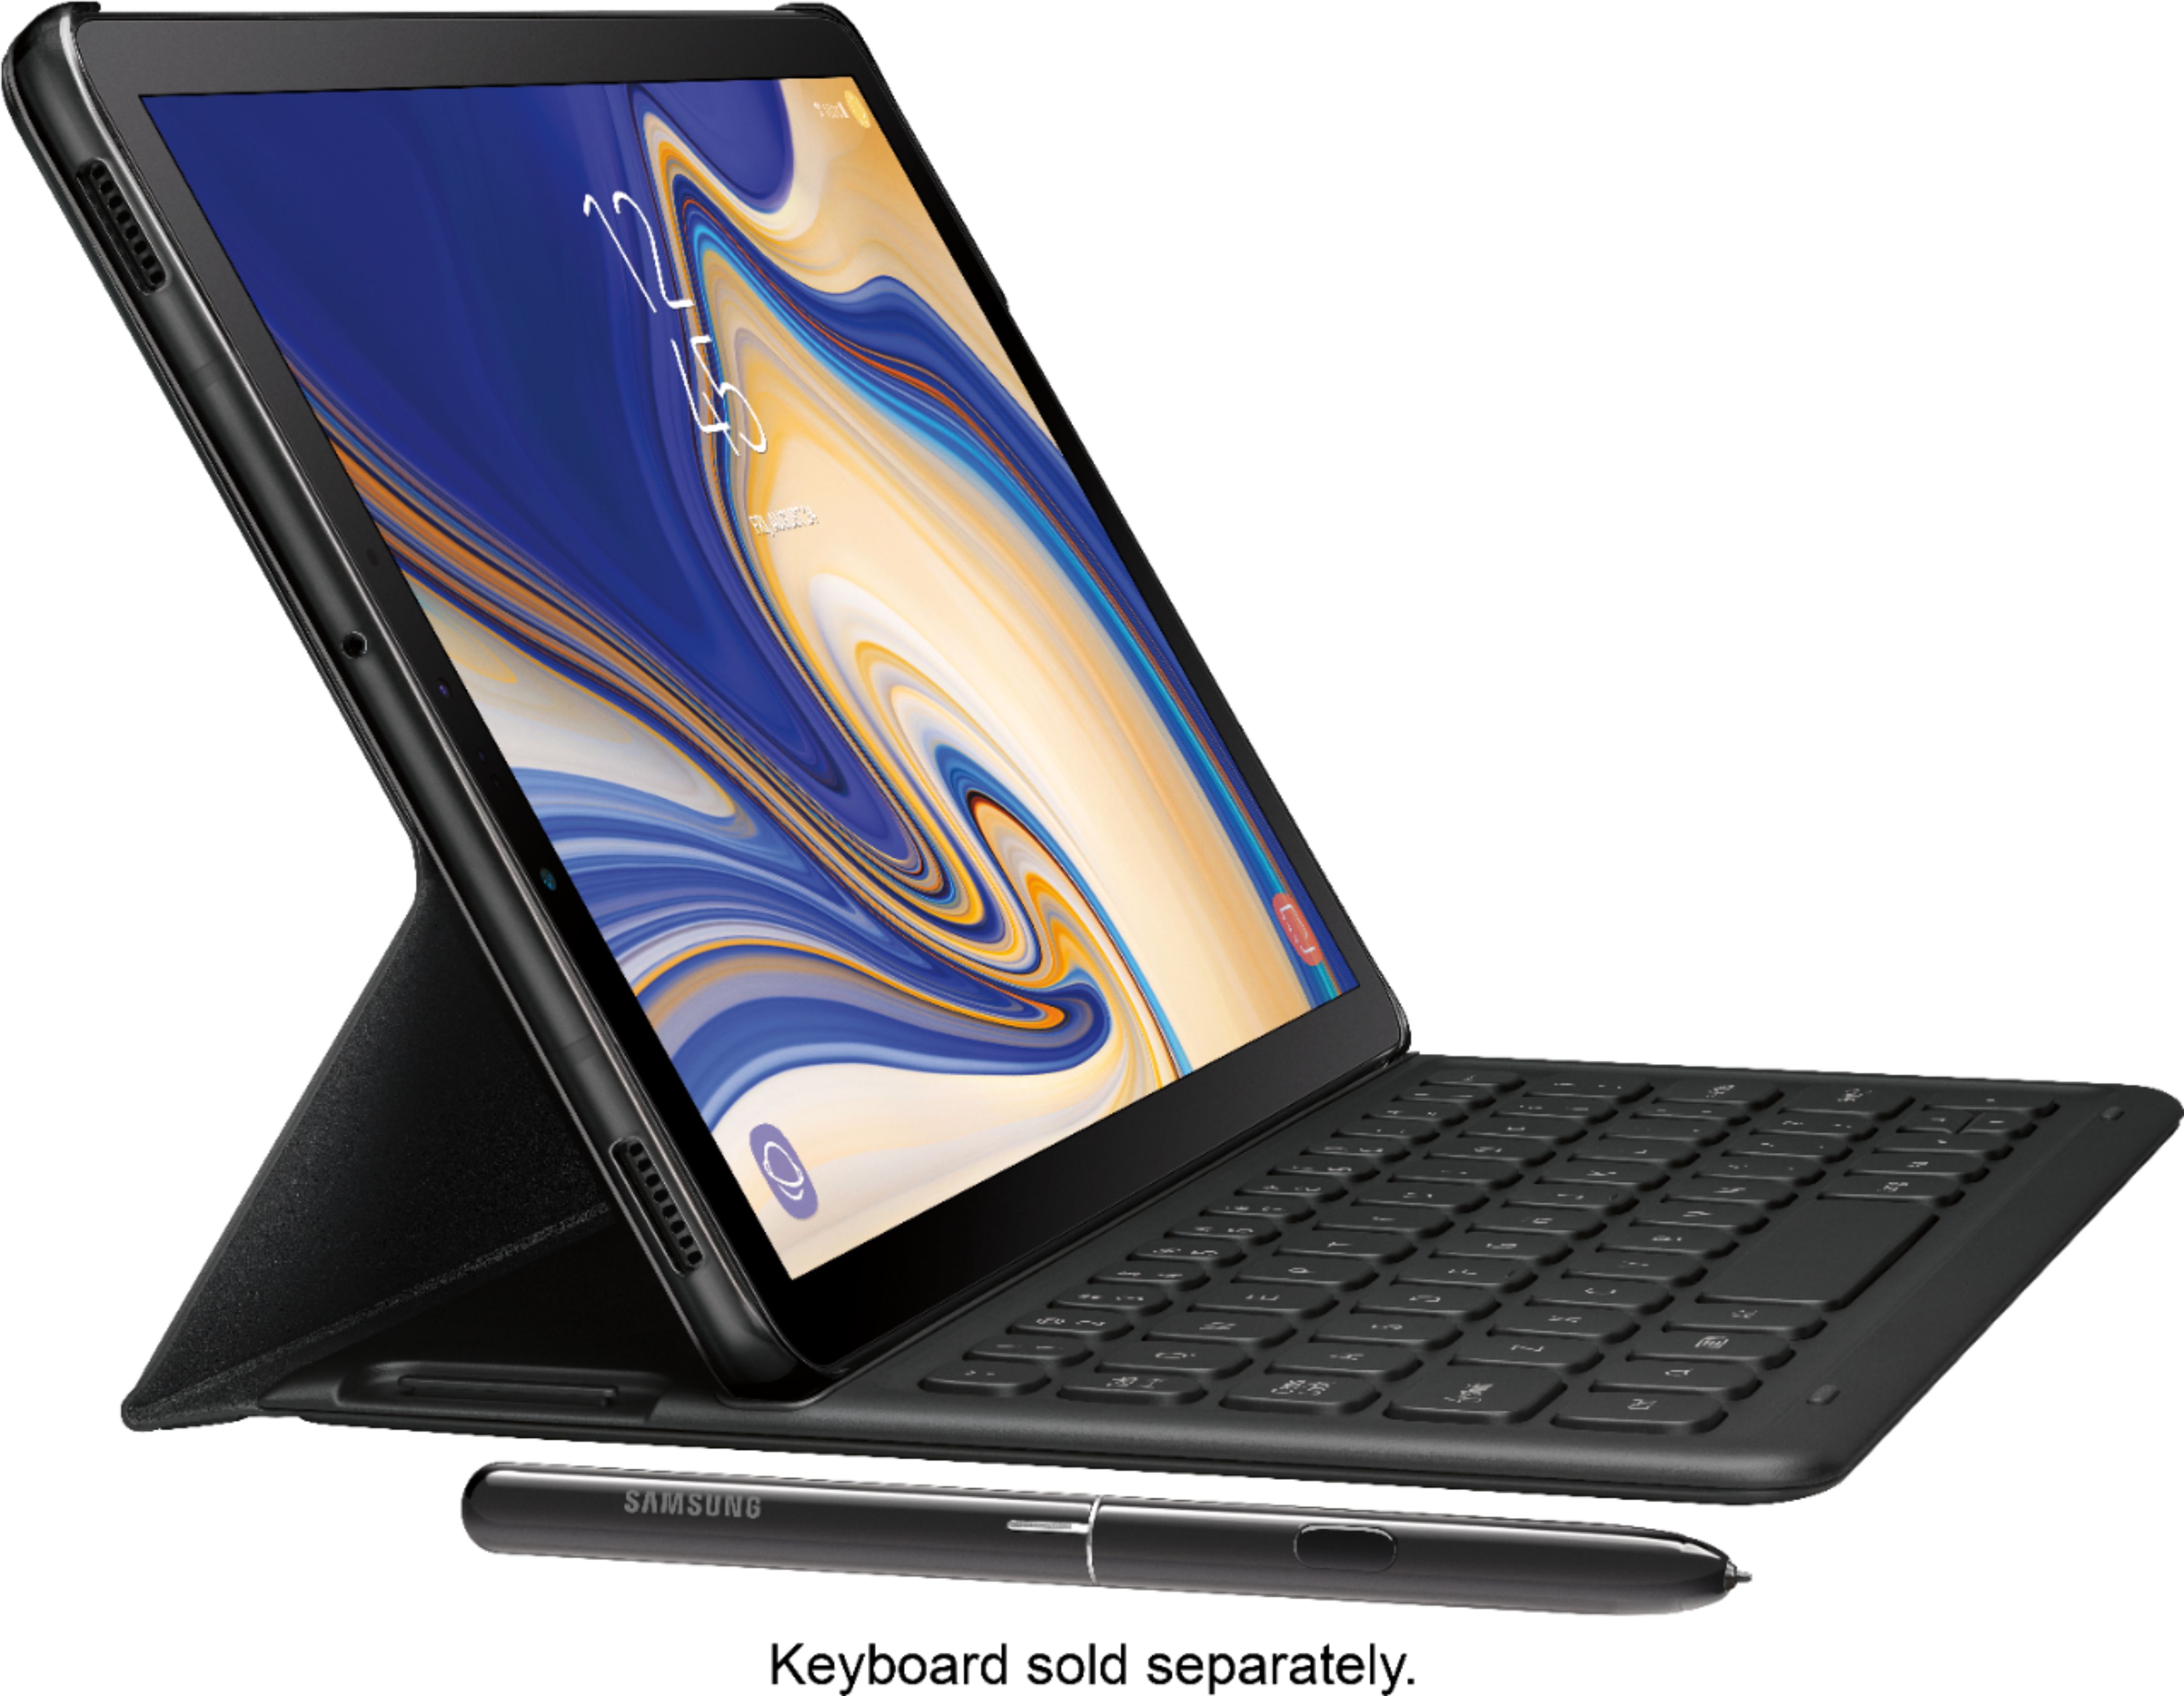 Samsung - Galaxy Tab S4 - 10.5" - 64GB - Black